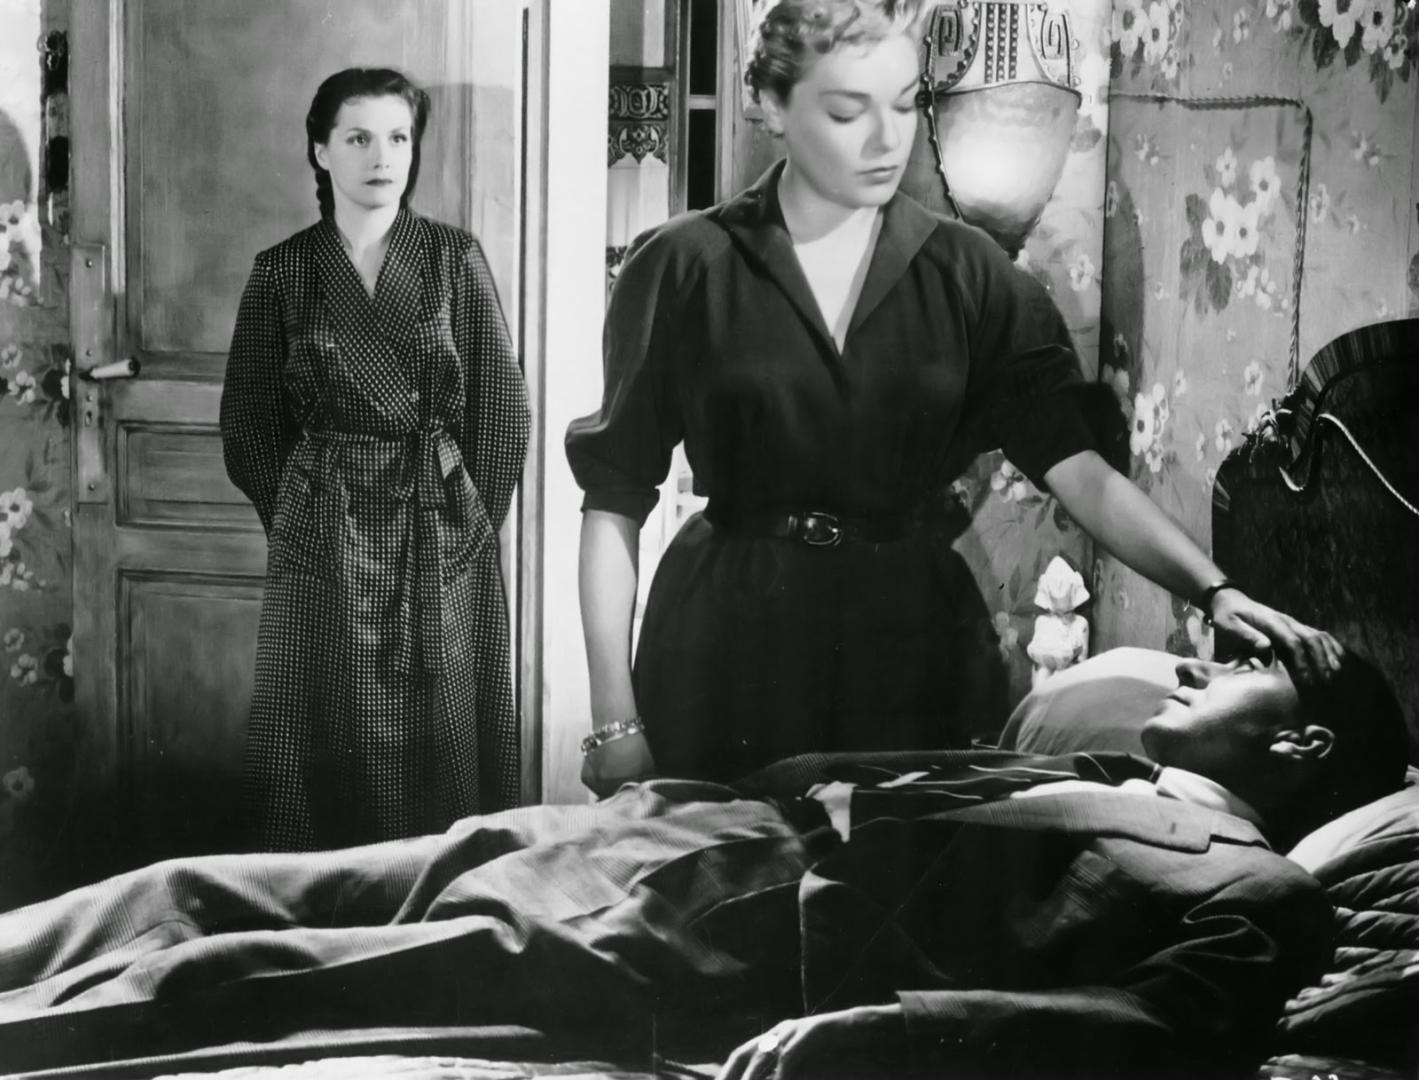 Les diaboliques - Ördöngösök (1955) 1. kép